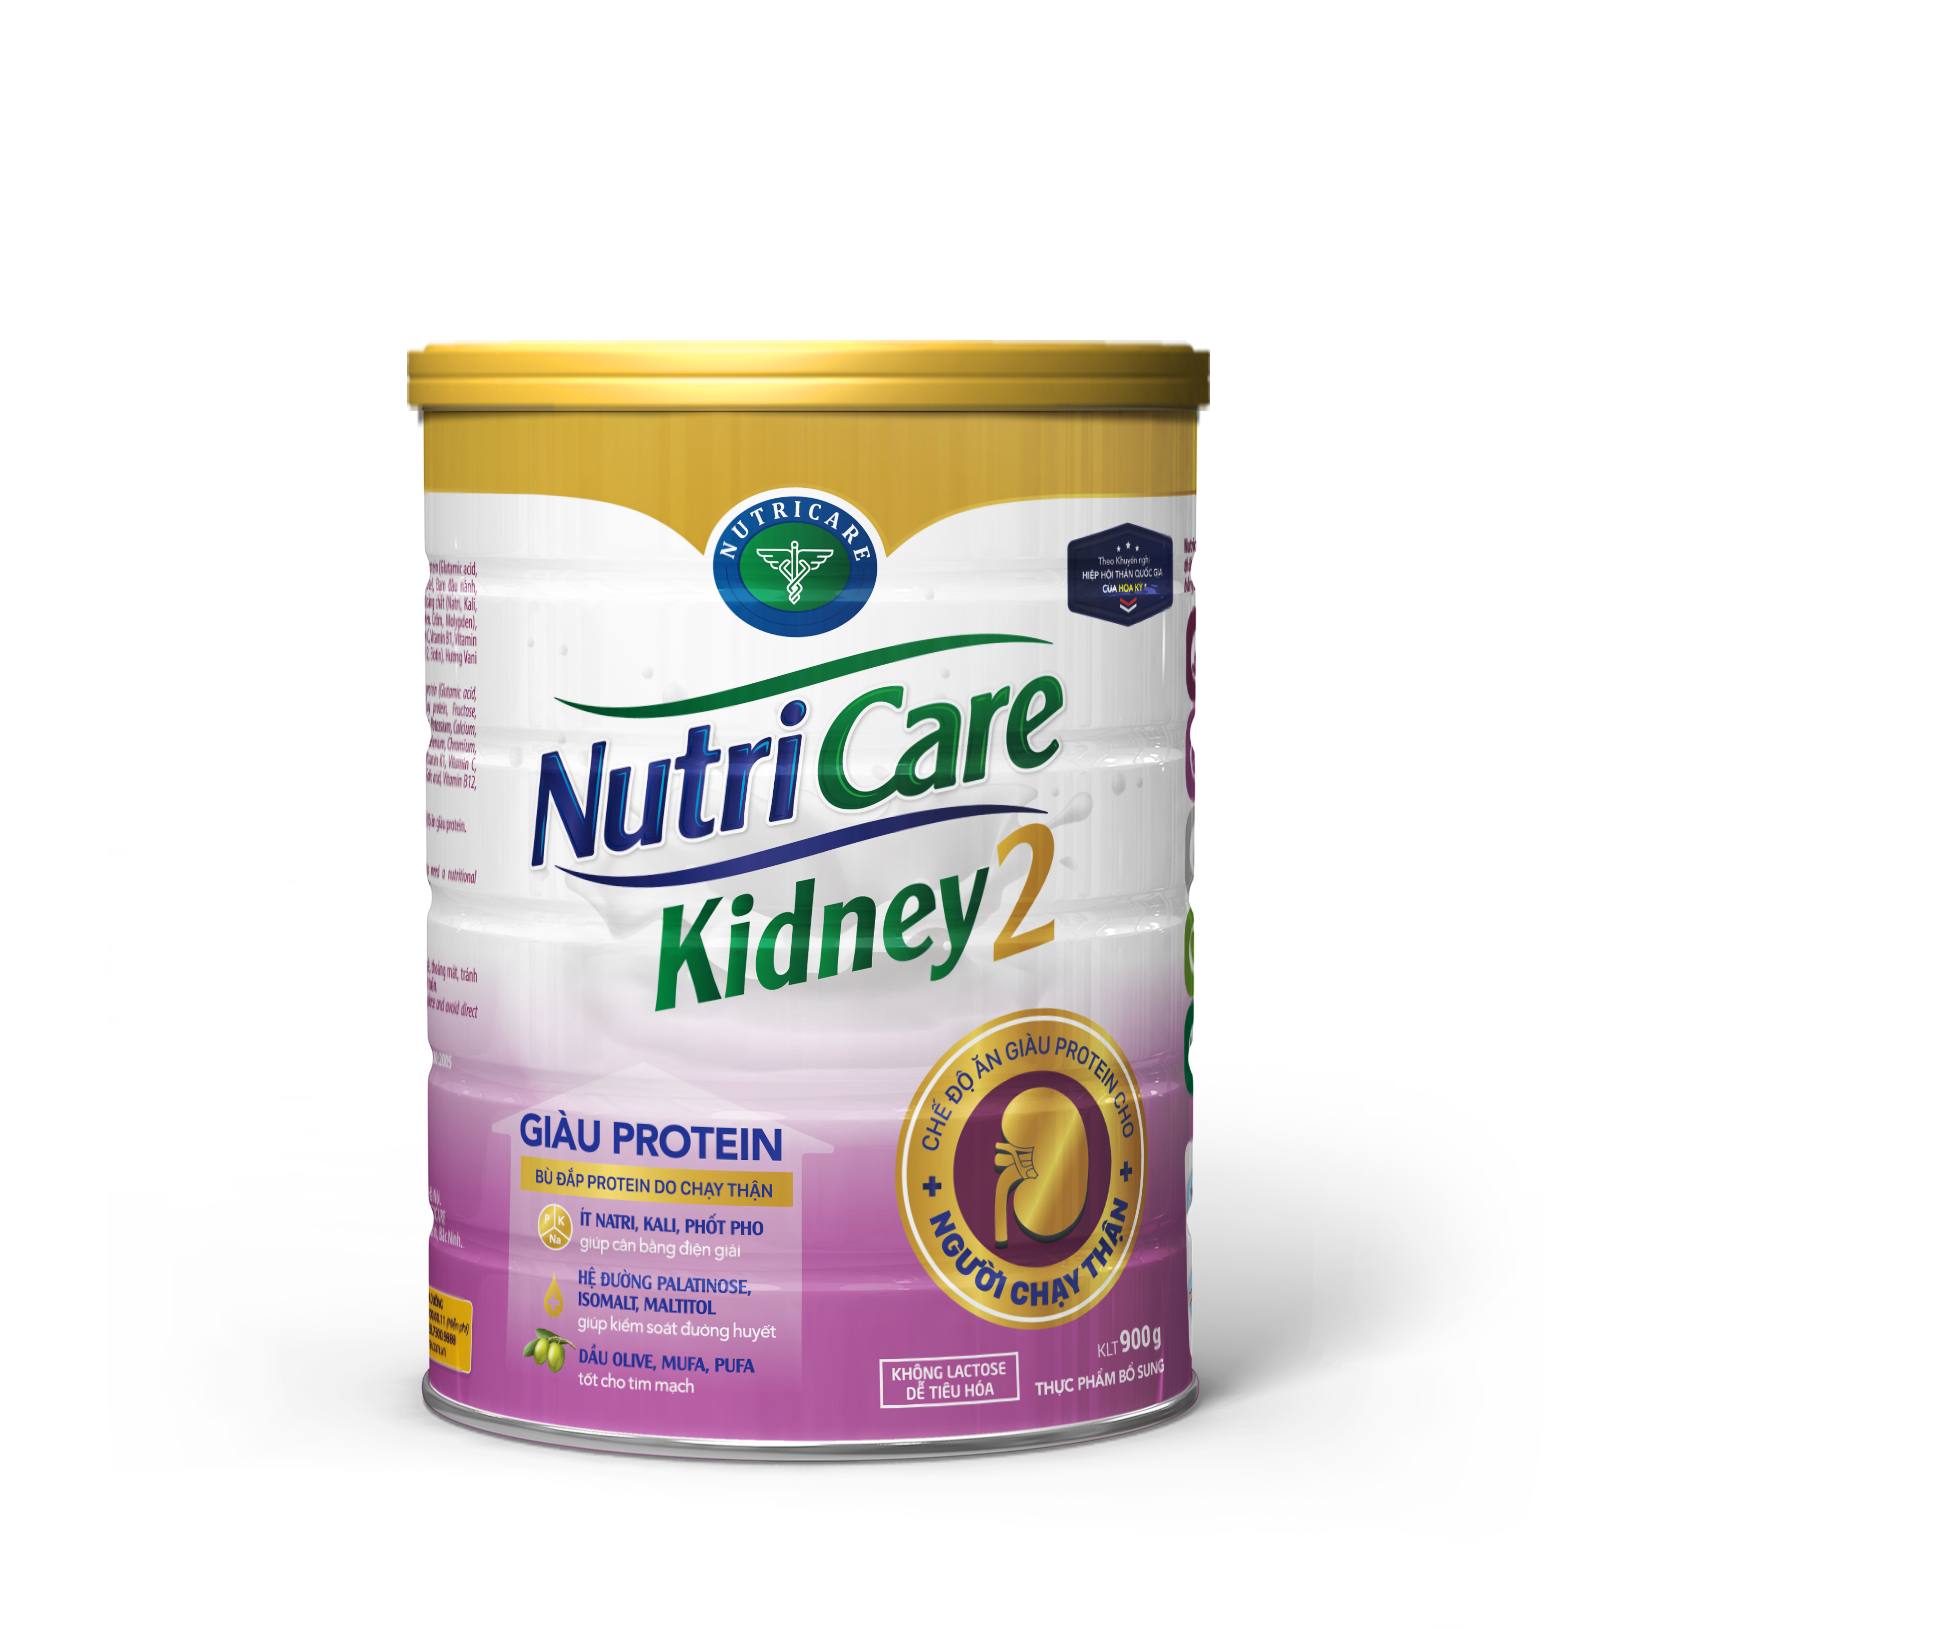 Sữa bột Nutricare Kidney 2 - giàu protein, dinh dưỡng cho người chạy thận nhân tạo (900g)